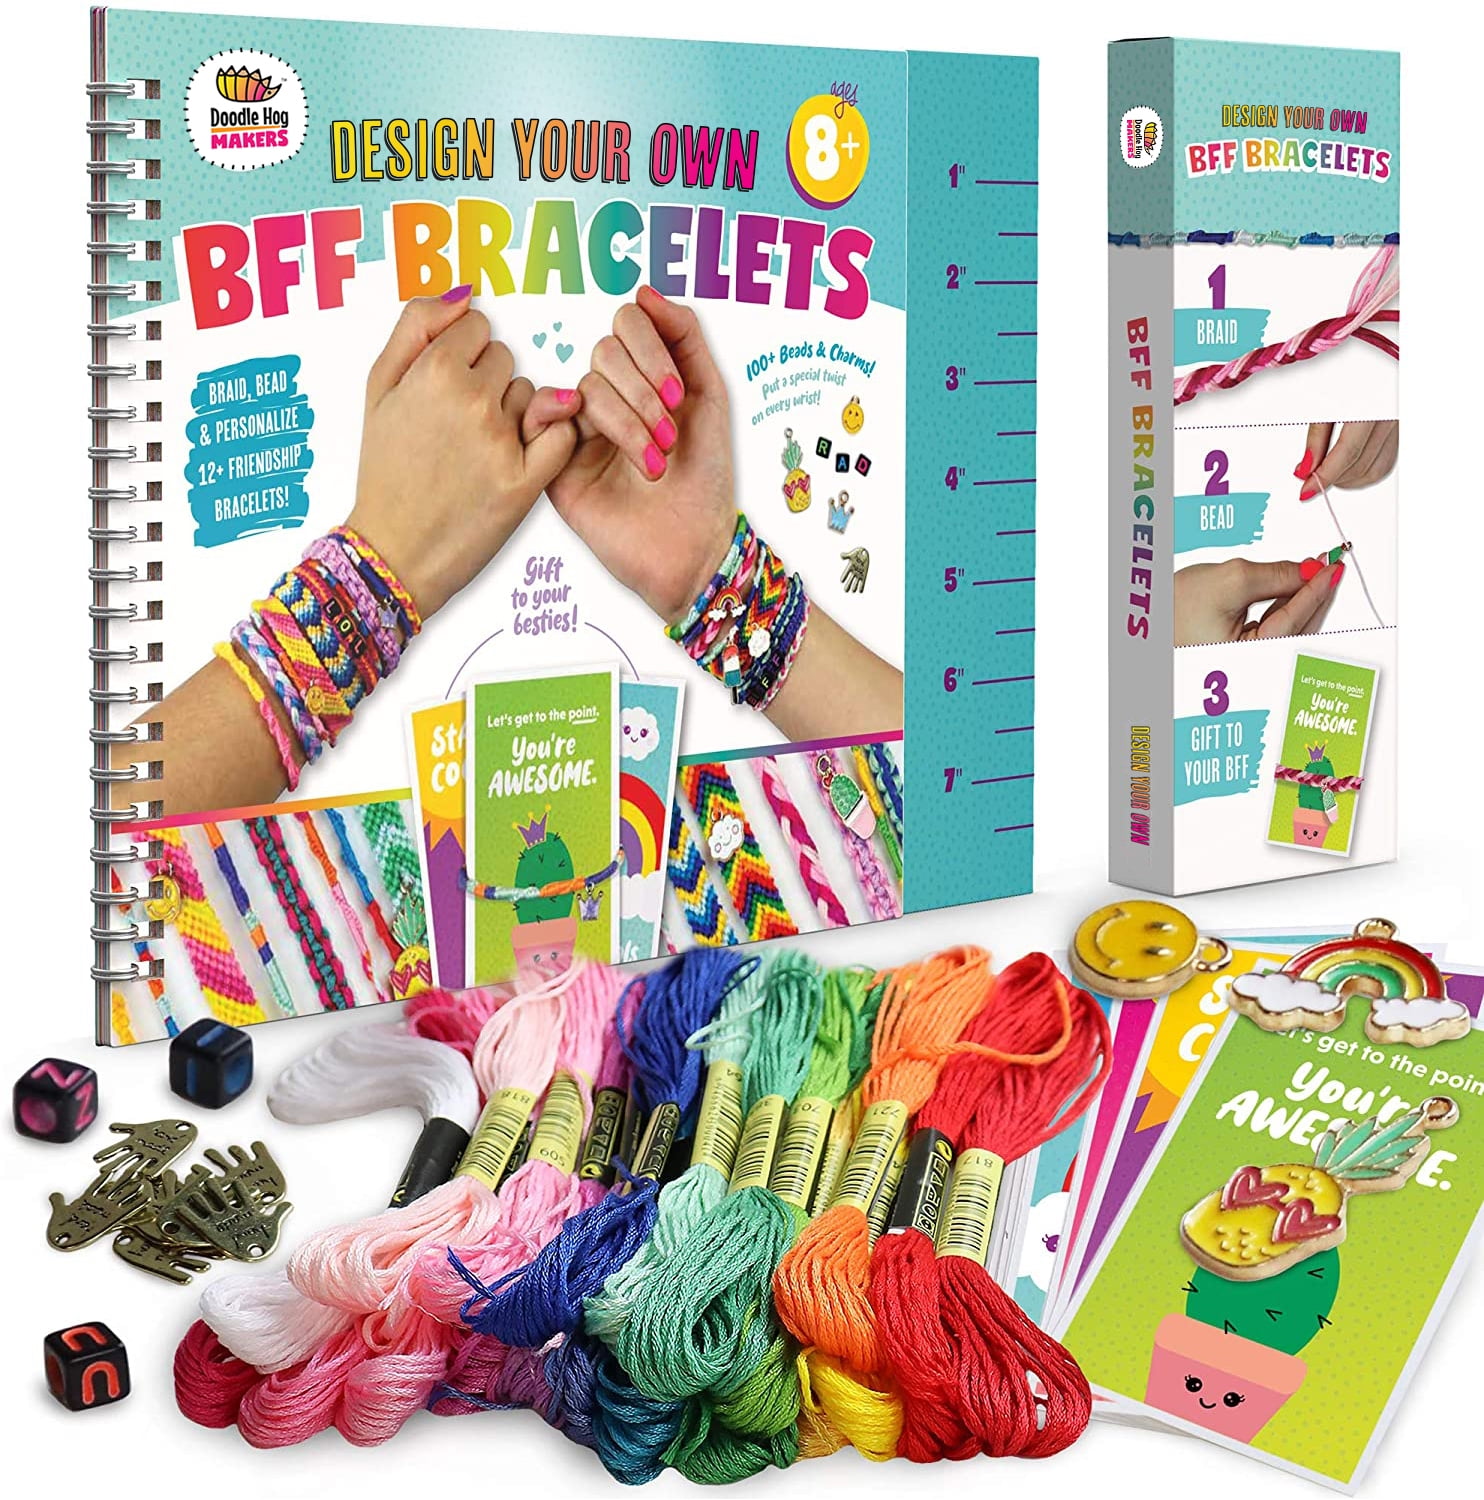 BUILPLAY Friendship Bracelet Making Kit for girls - Makes 15 Beads